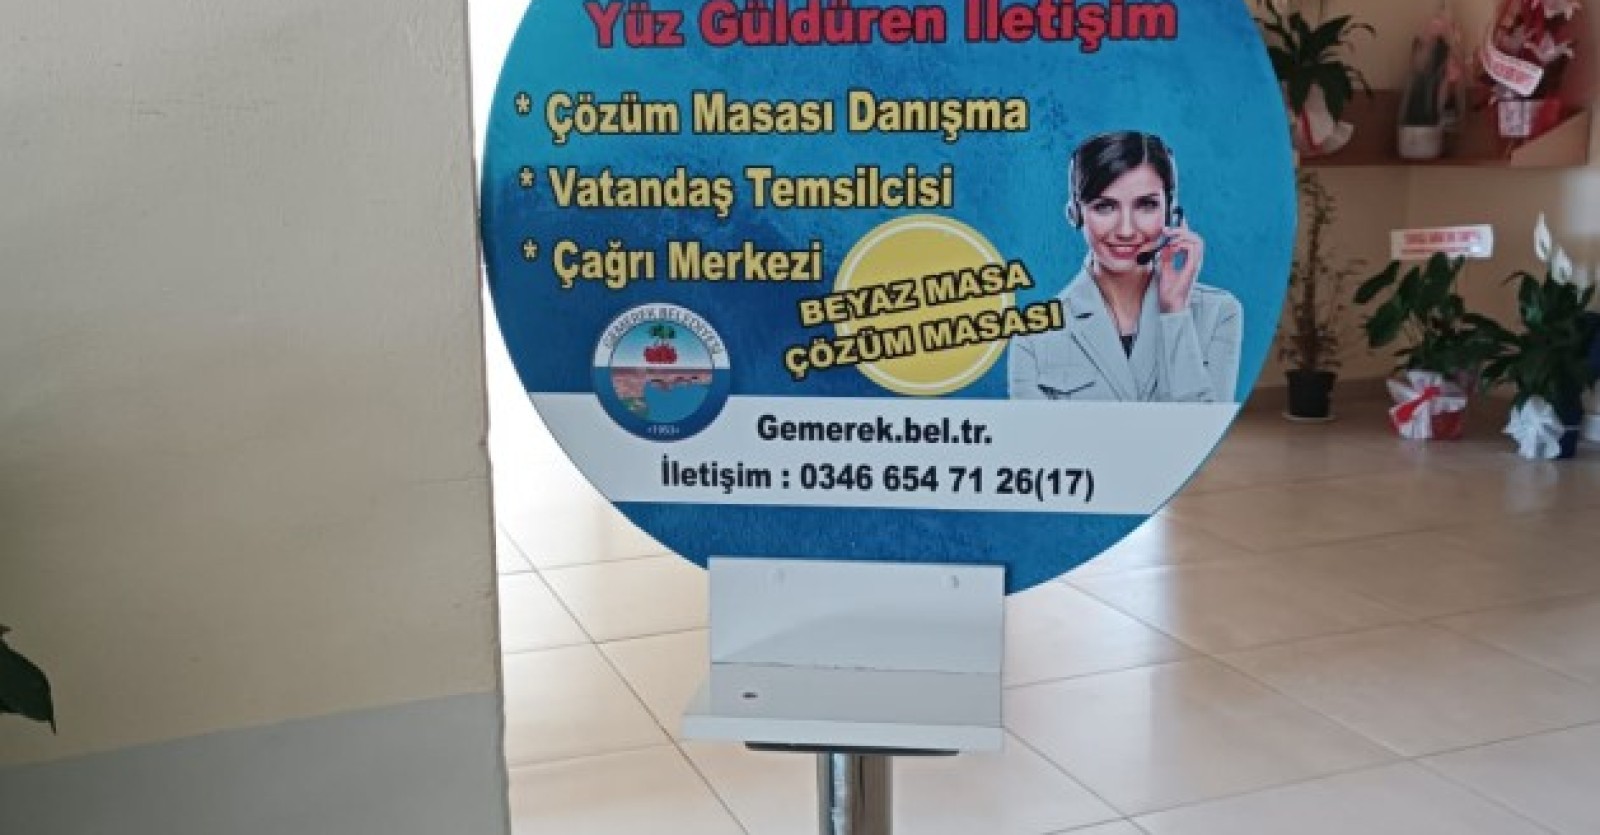 BEYAZ MASA "ÇÖZÜM MASASI" HALKIMIZIN HİZMETİNDE..